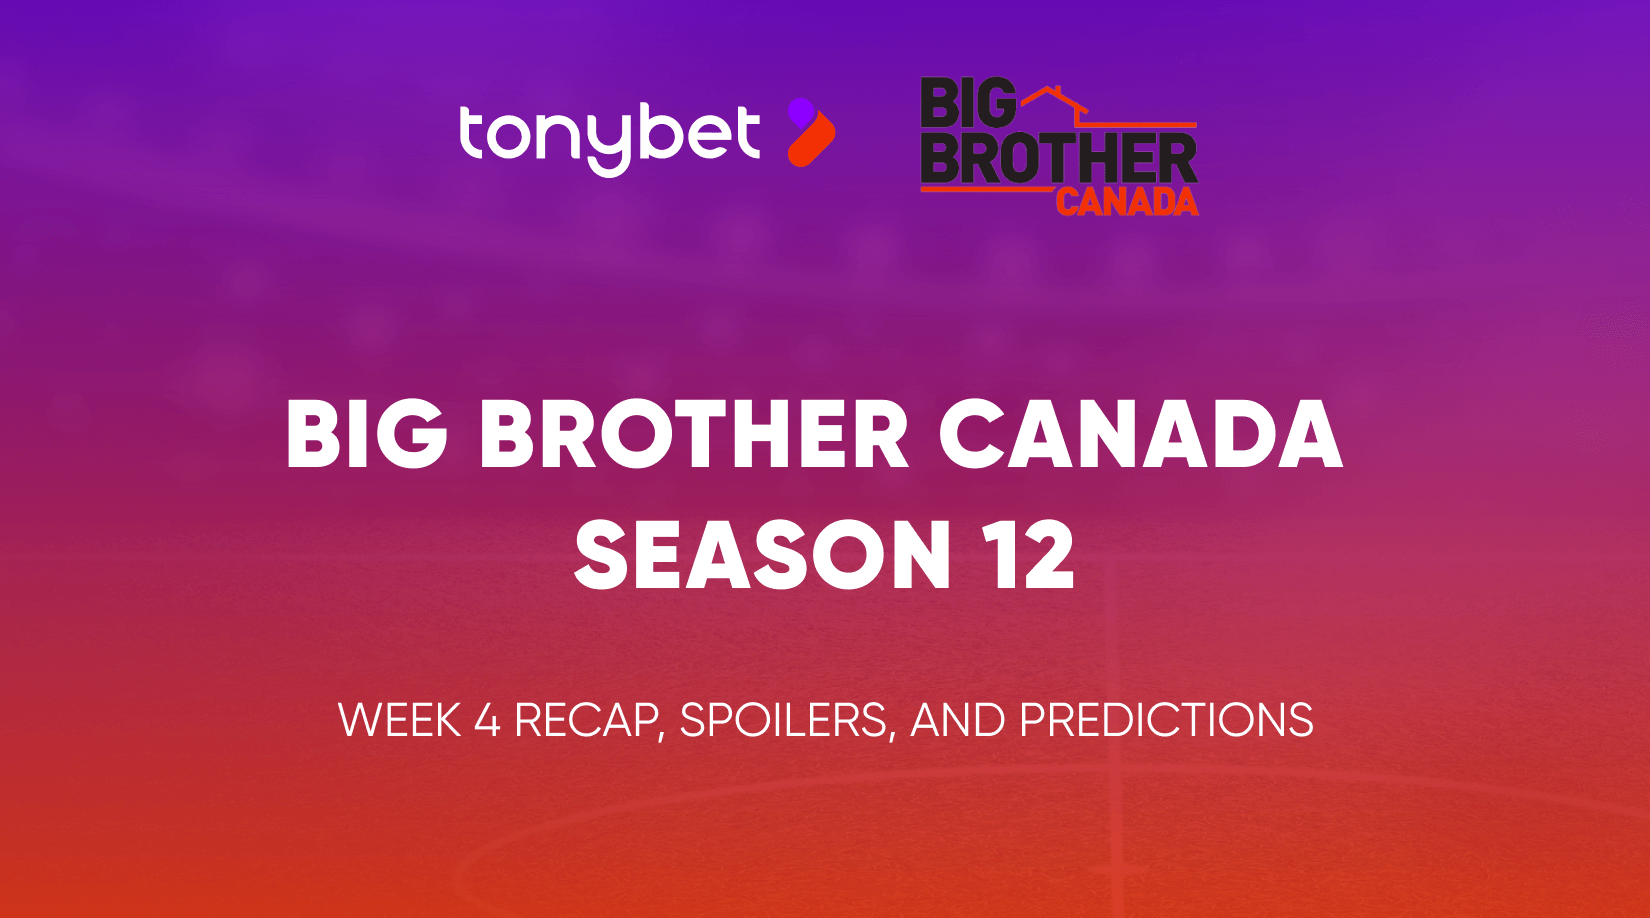 Big Brother Canada Season 12 Week 4 Recap, Spoilers, and Predictions